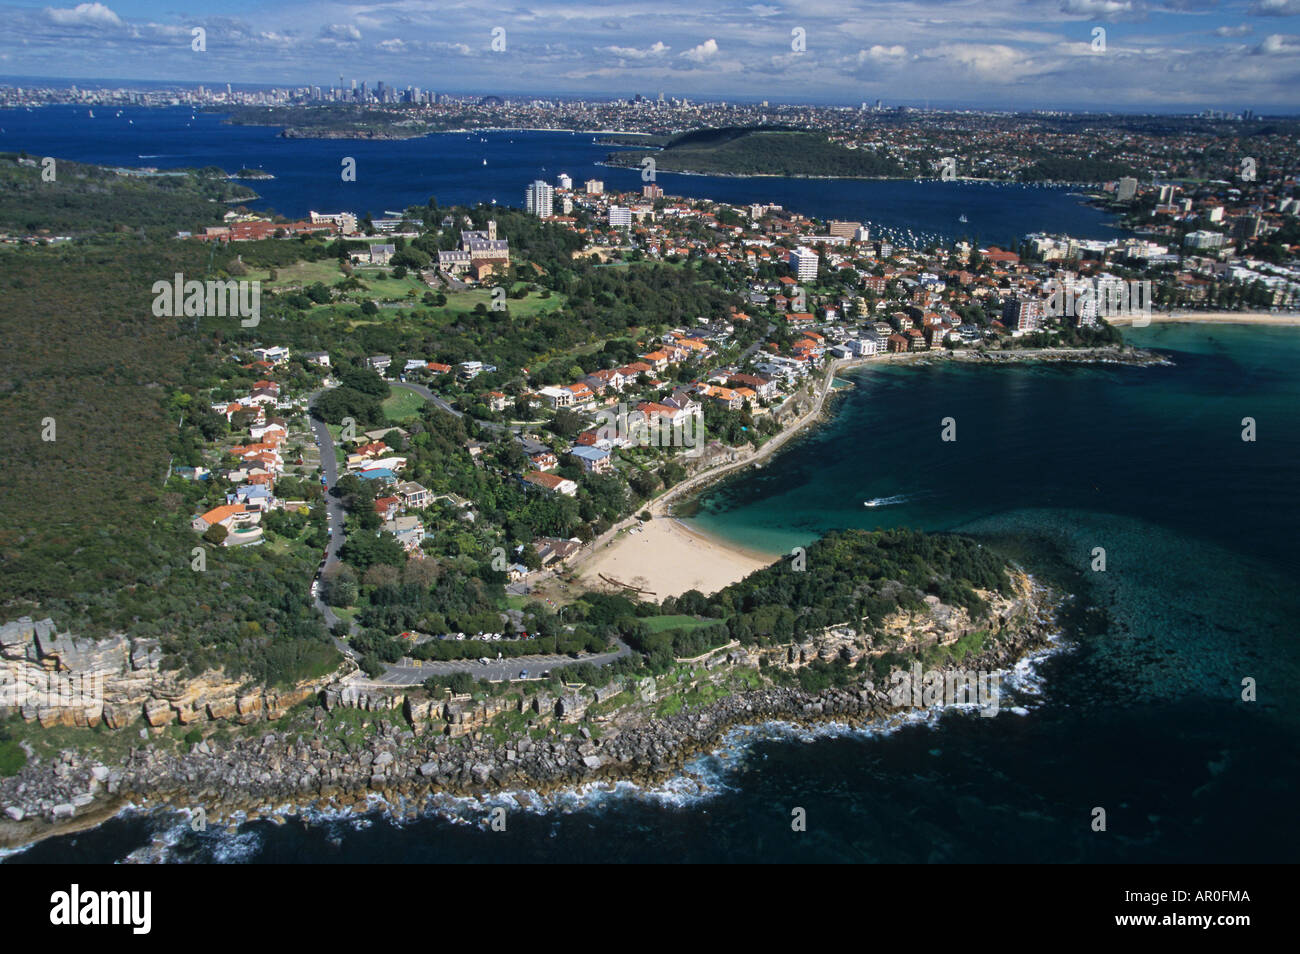 Il Porto di Sydney dall'aria, Australien, NSW, Sydney Harbour foto aerea, Luftaufnahme von Harbour und Stadtviertel Foto Stock